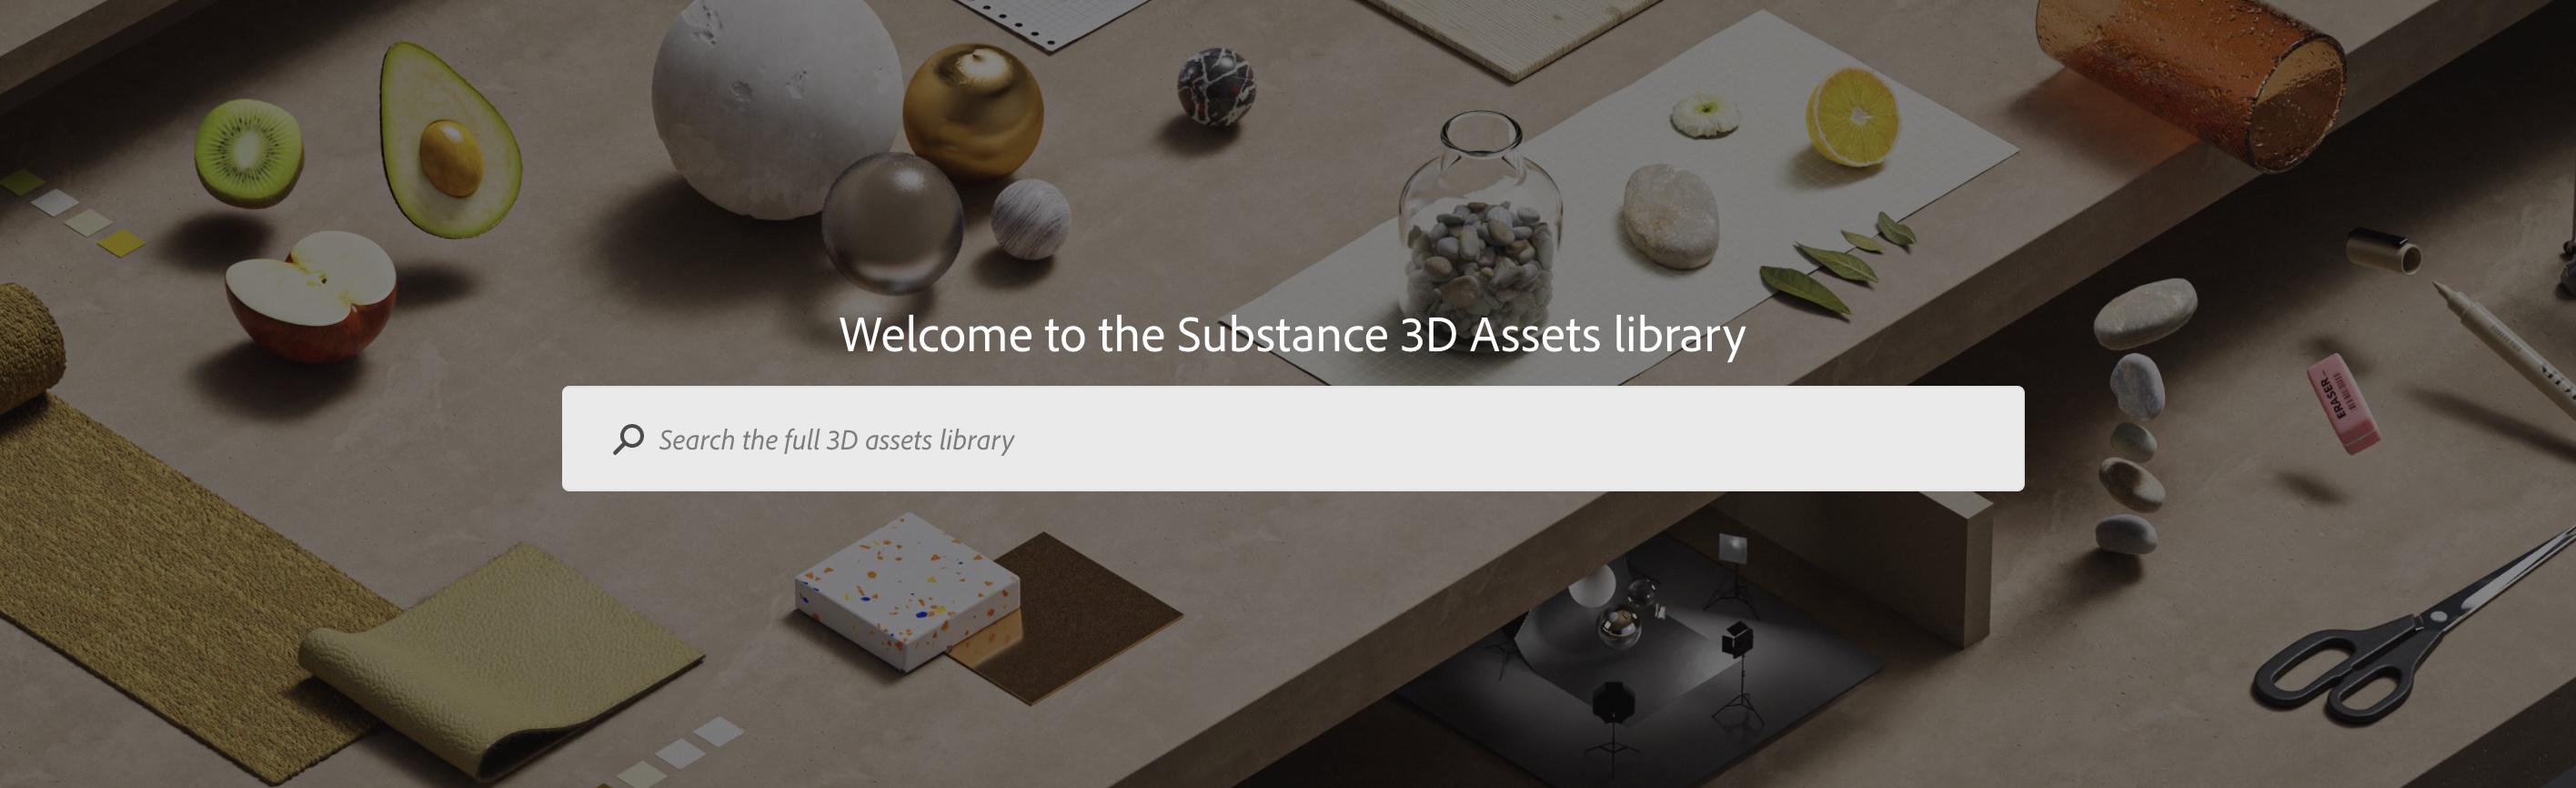 3D Models & Assets Library - Adobe Substance 3D